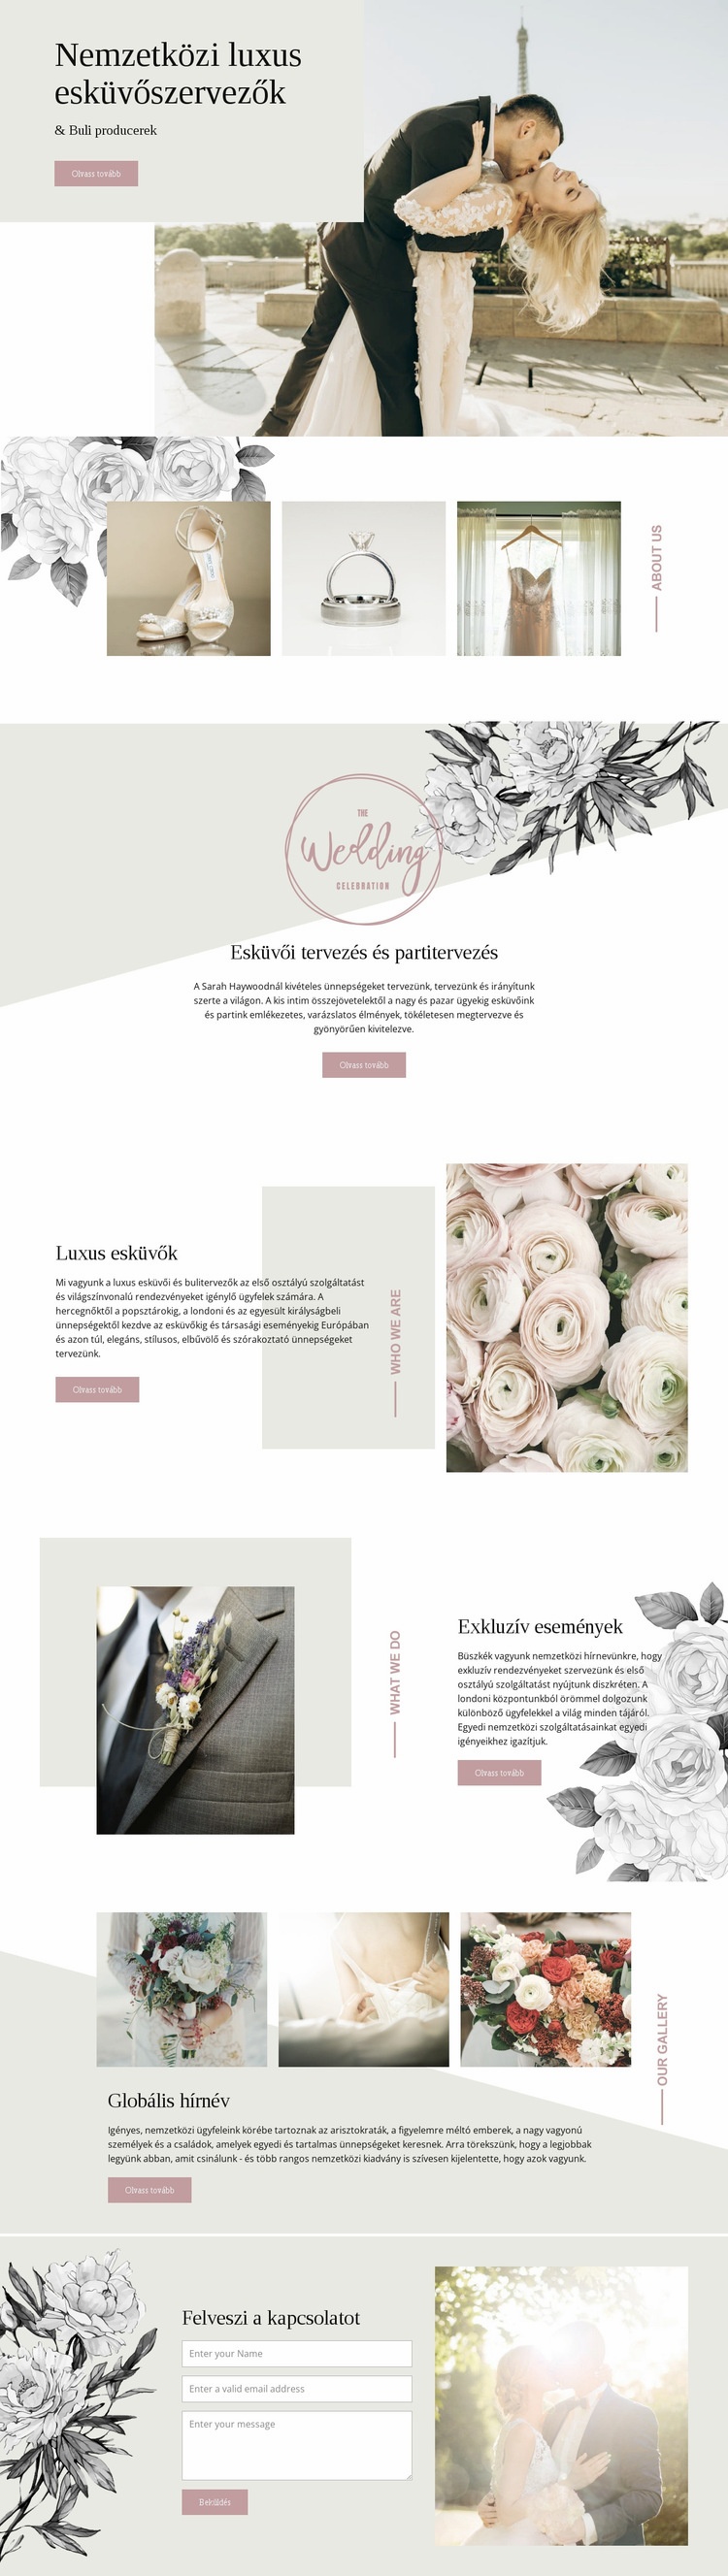 Luxus esküvő tervezői Weboldal sablon